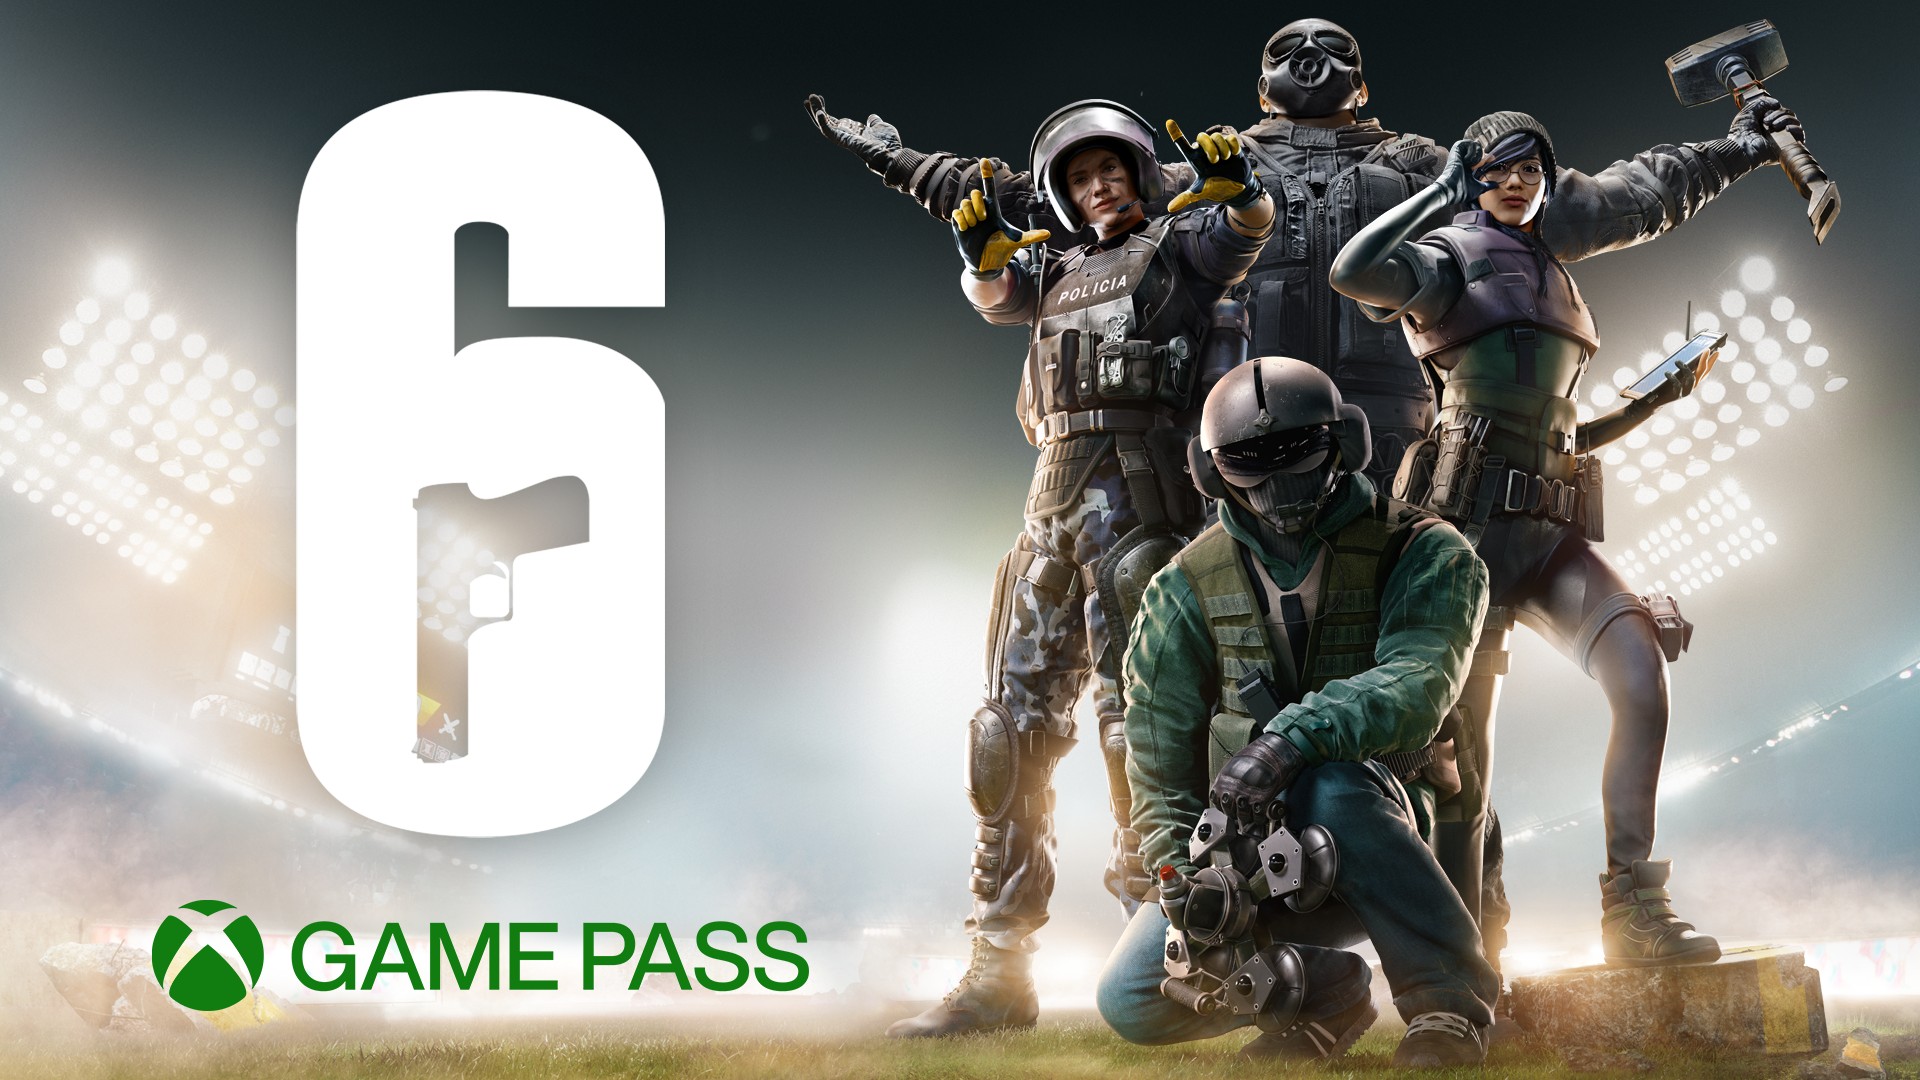 Bald im Xbox Game Pass: Tom Clancy’s Rainbow Six Siege